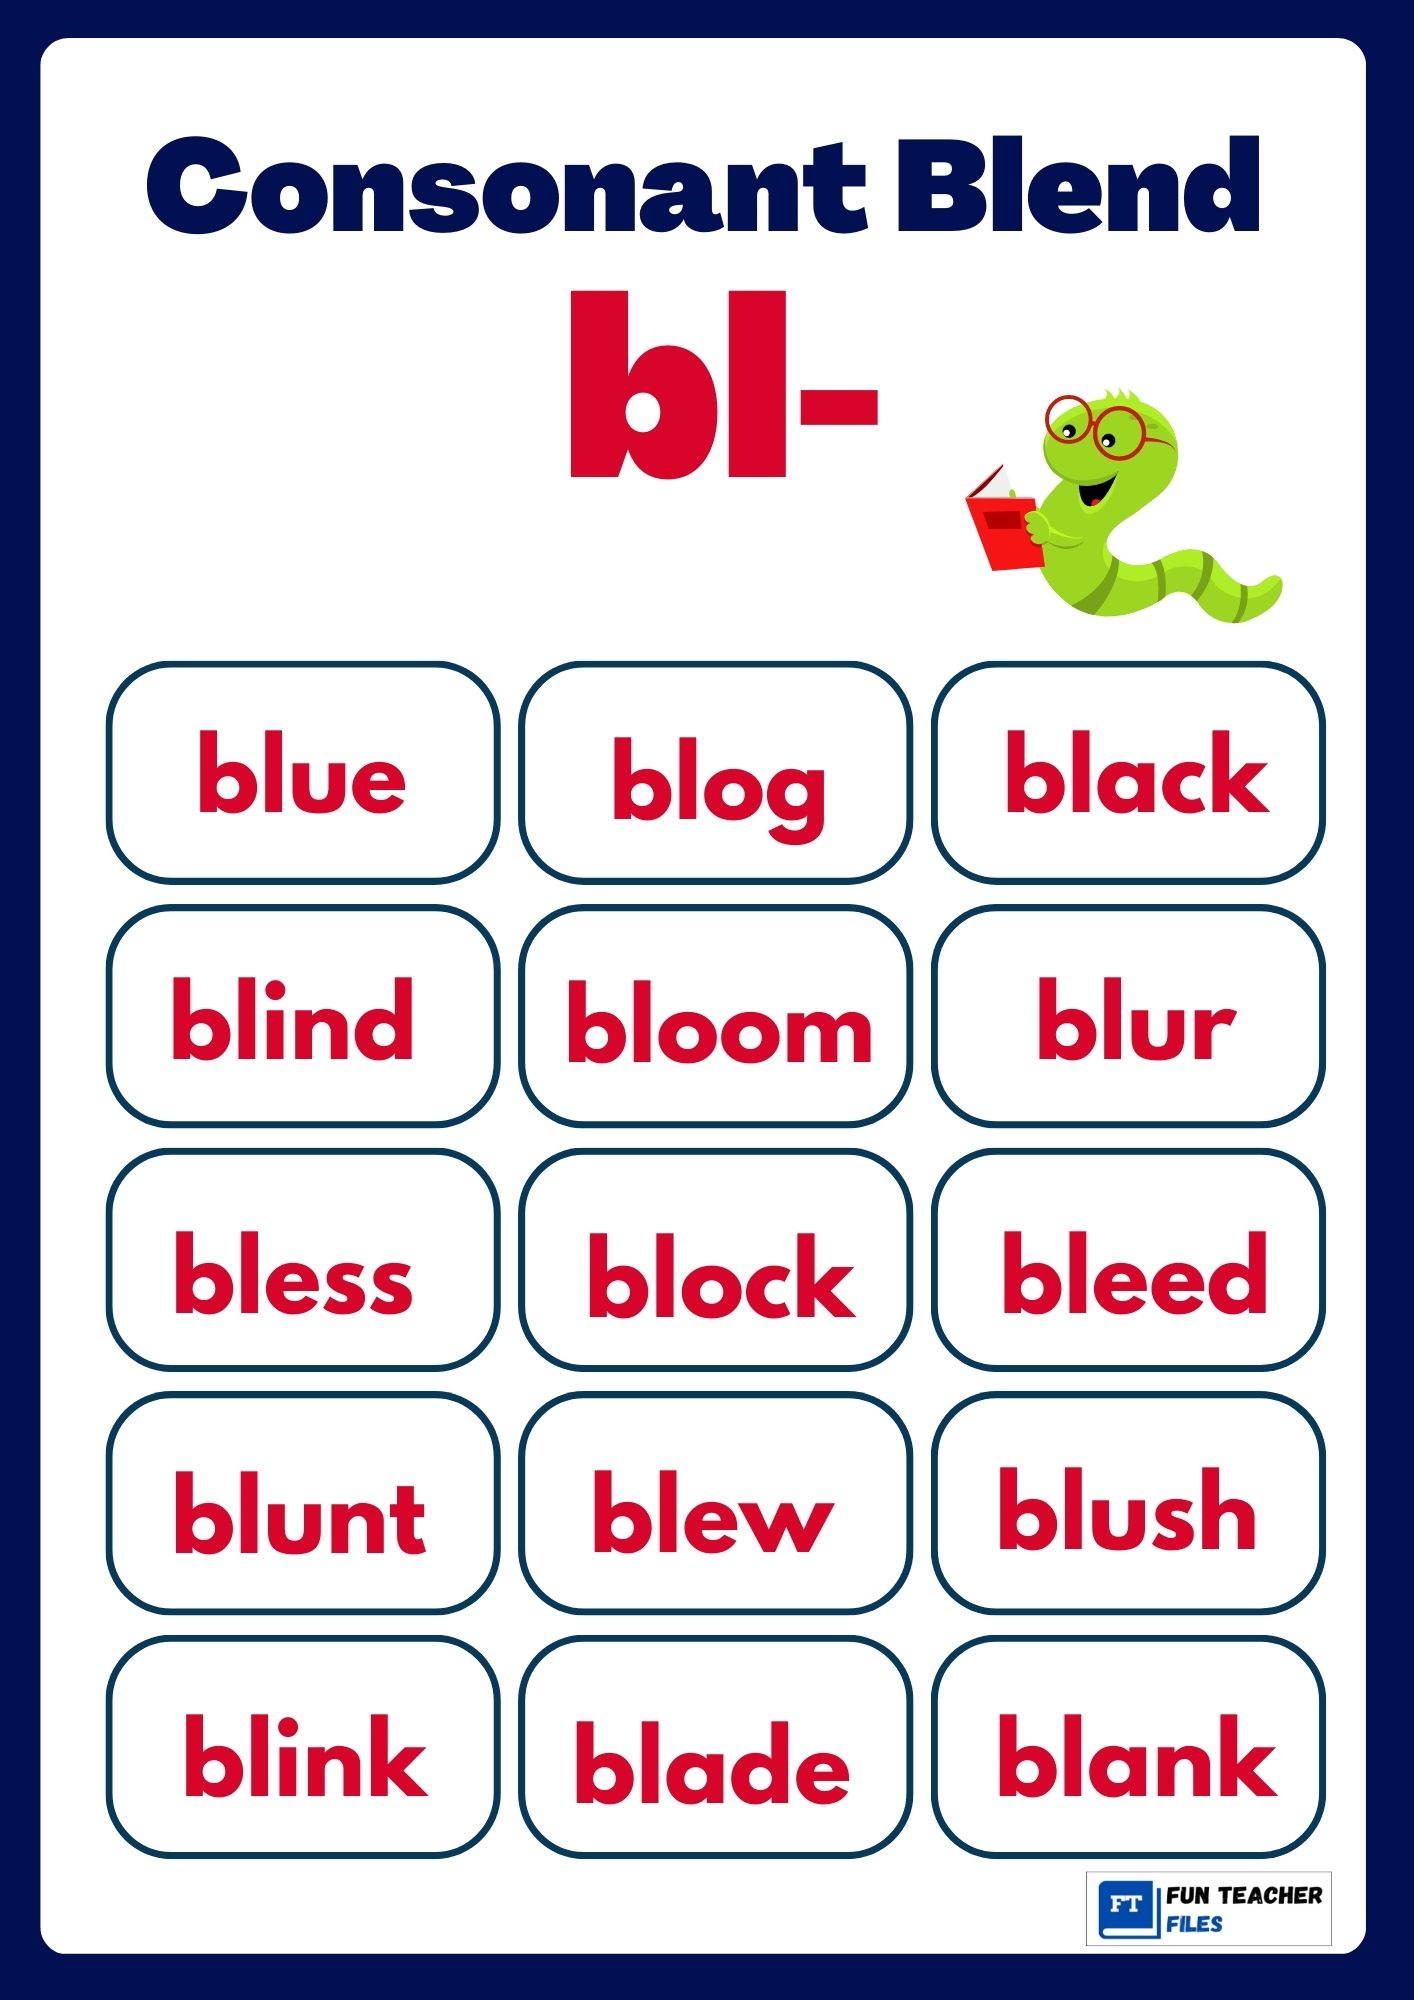 Consonant Blend Chart Fun Teacher Files